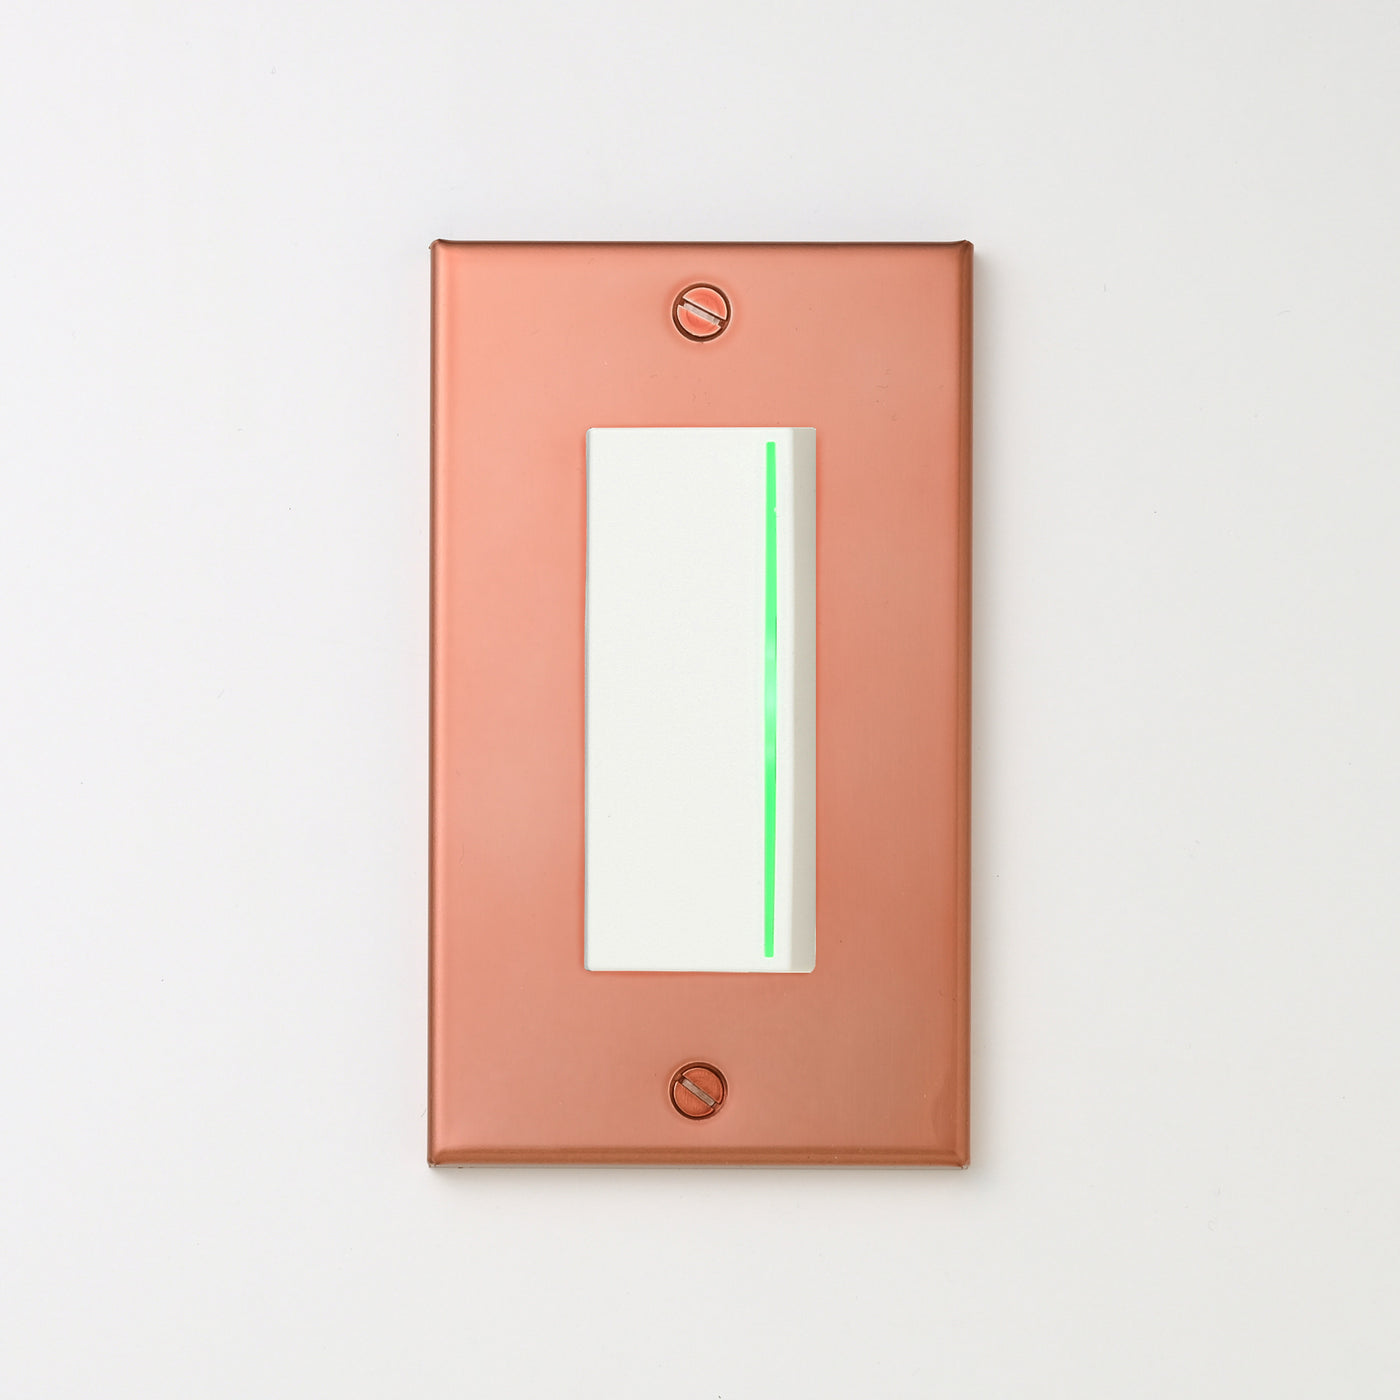 銅色（マット） プレート <br>+ NK 片切、3路ガイドランプ（グリーン）付スイッチシングル  ホワイト